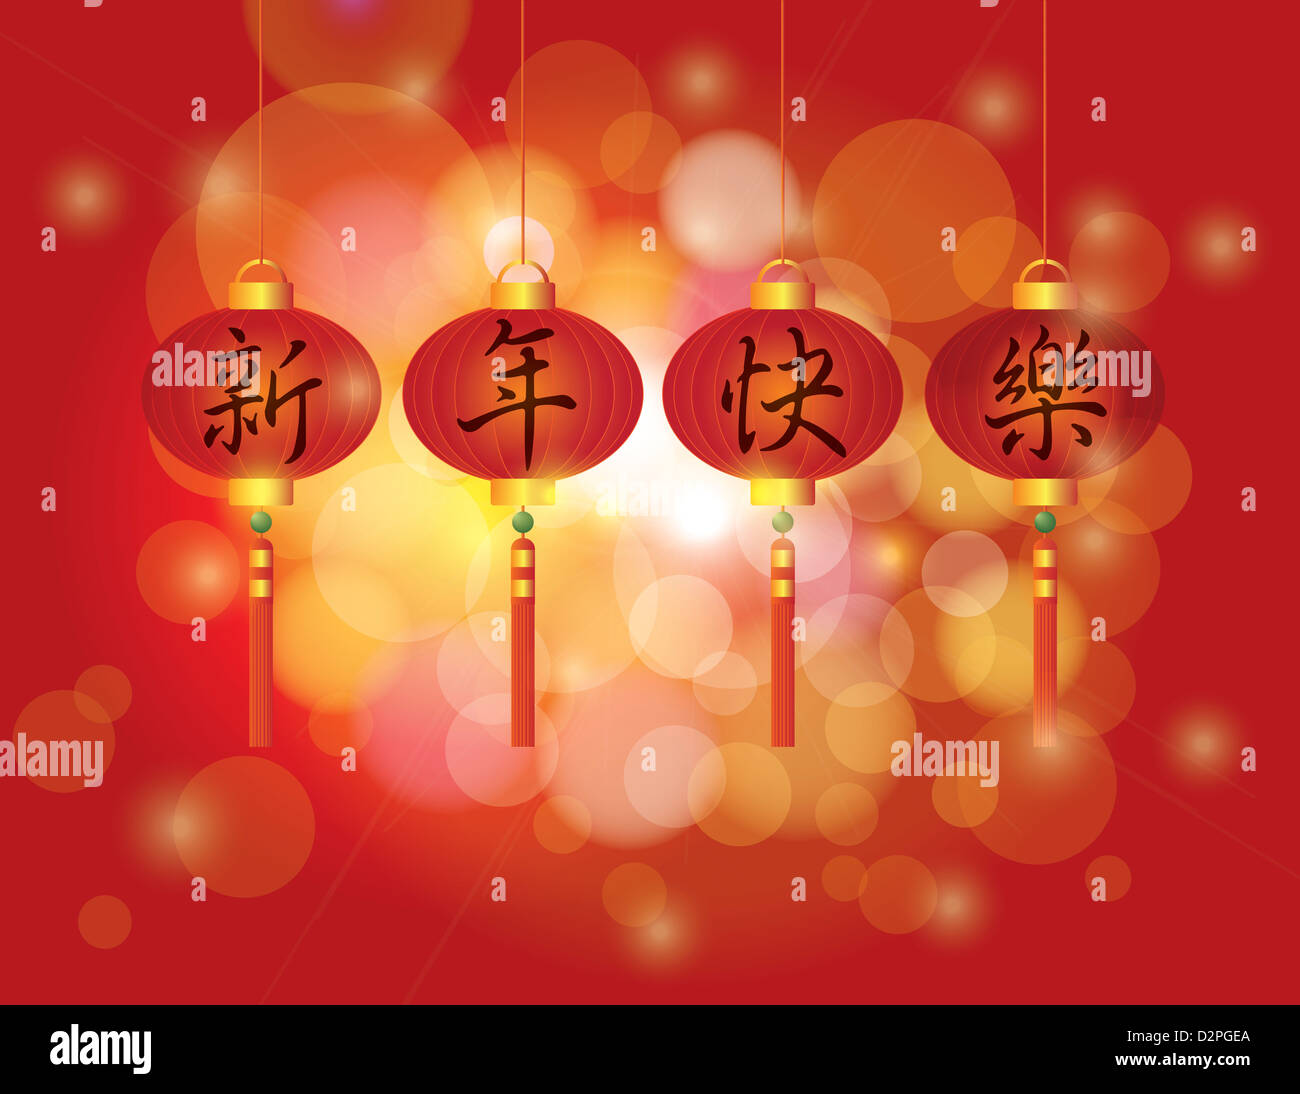 Felice nuovo anno lunare cinese calligrafia testo su lanterne rosse con rosso sfondo bokeh illustrazione Foto Stock